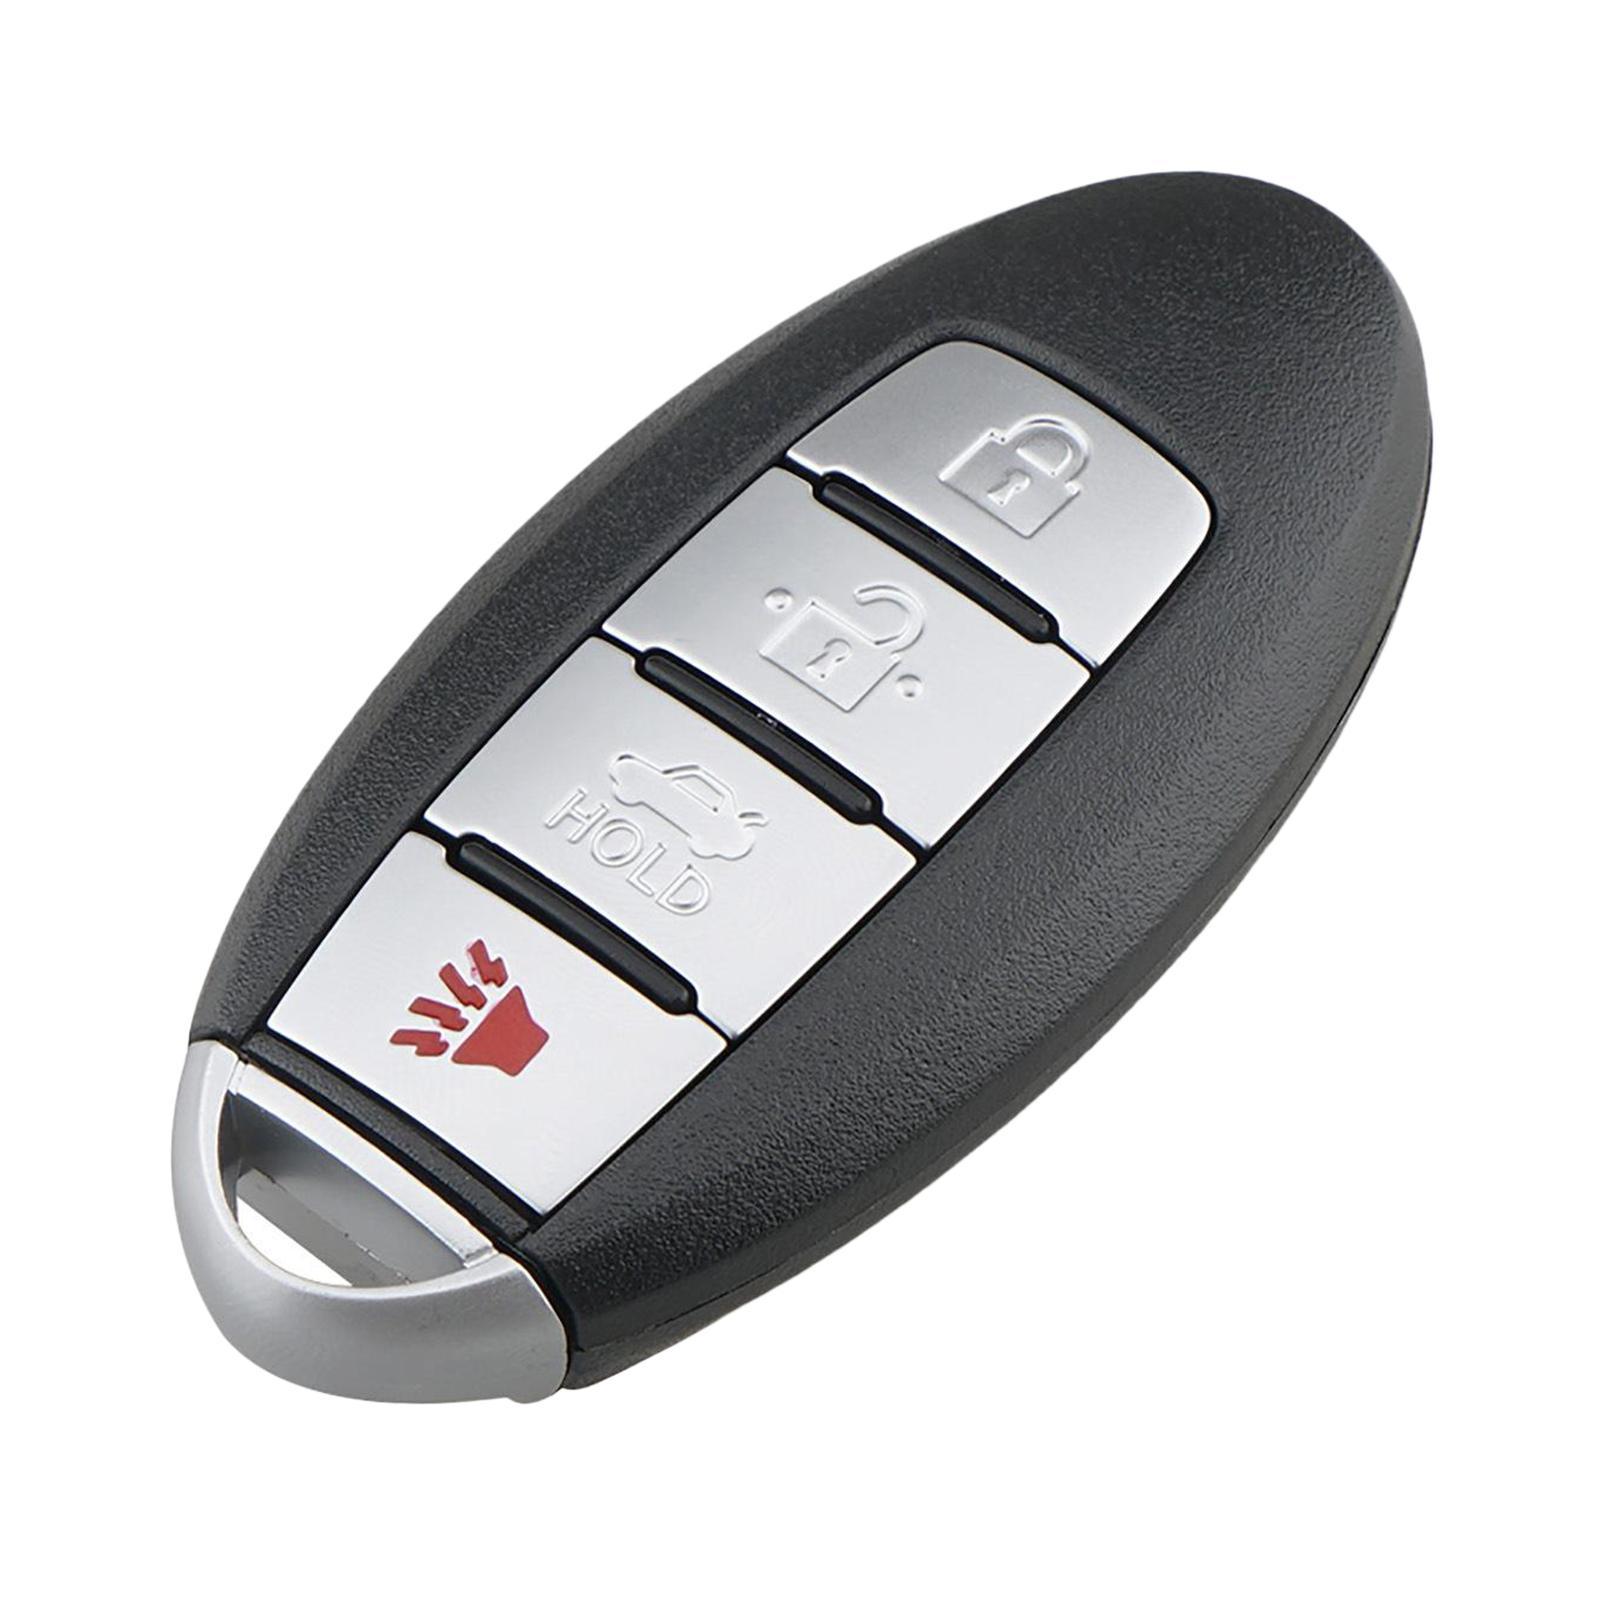 Auto Remote Control -Button Compatible for ARMADA 17-20